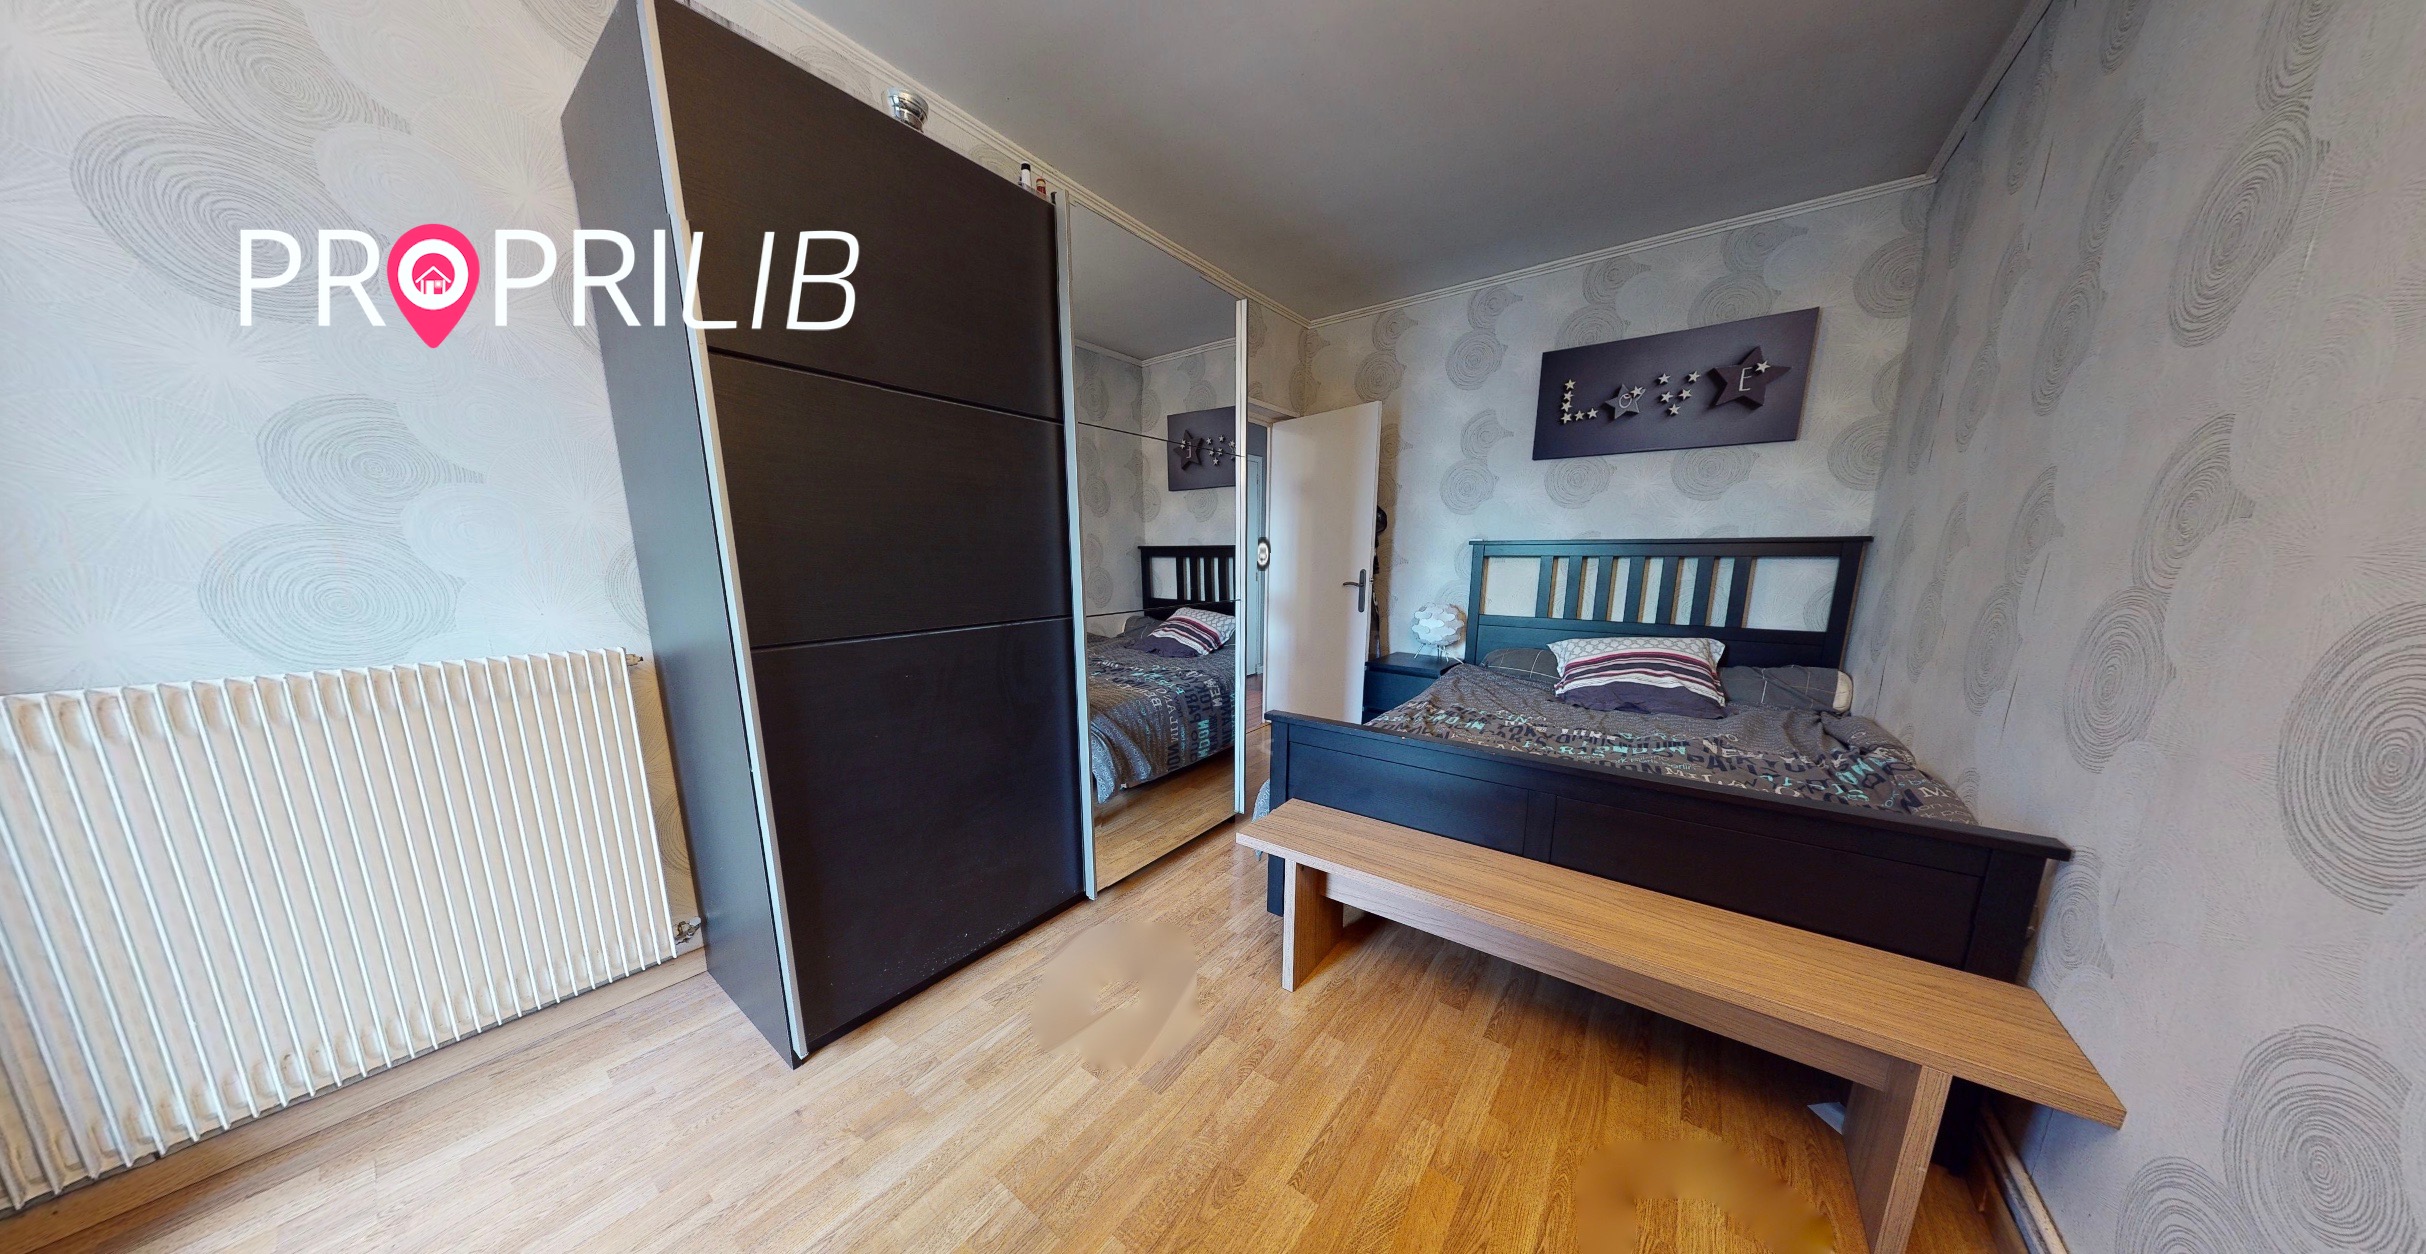 PropriLib l’agence immobilière en ligne au forfait vend cet appartement à Neuilly-sur-Marne